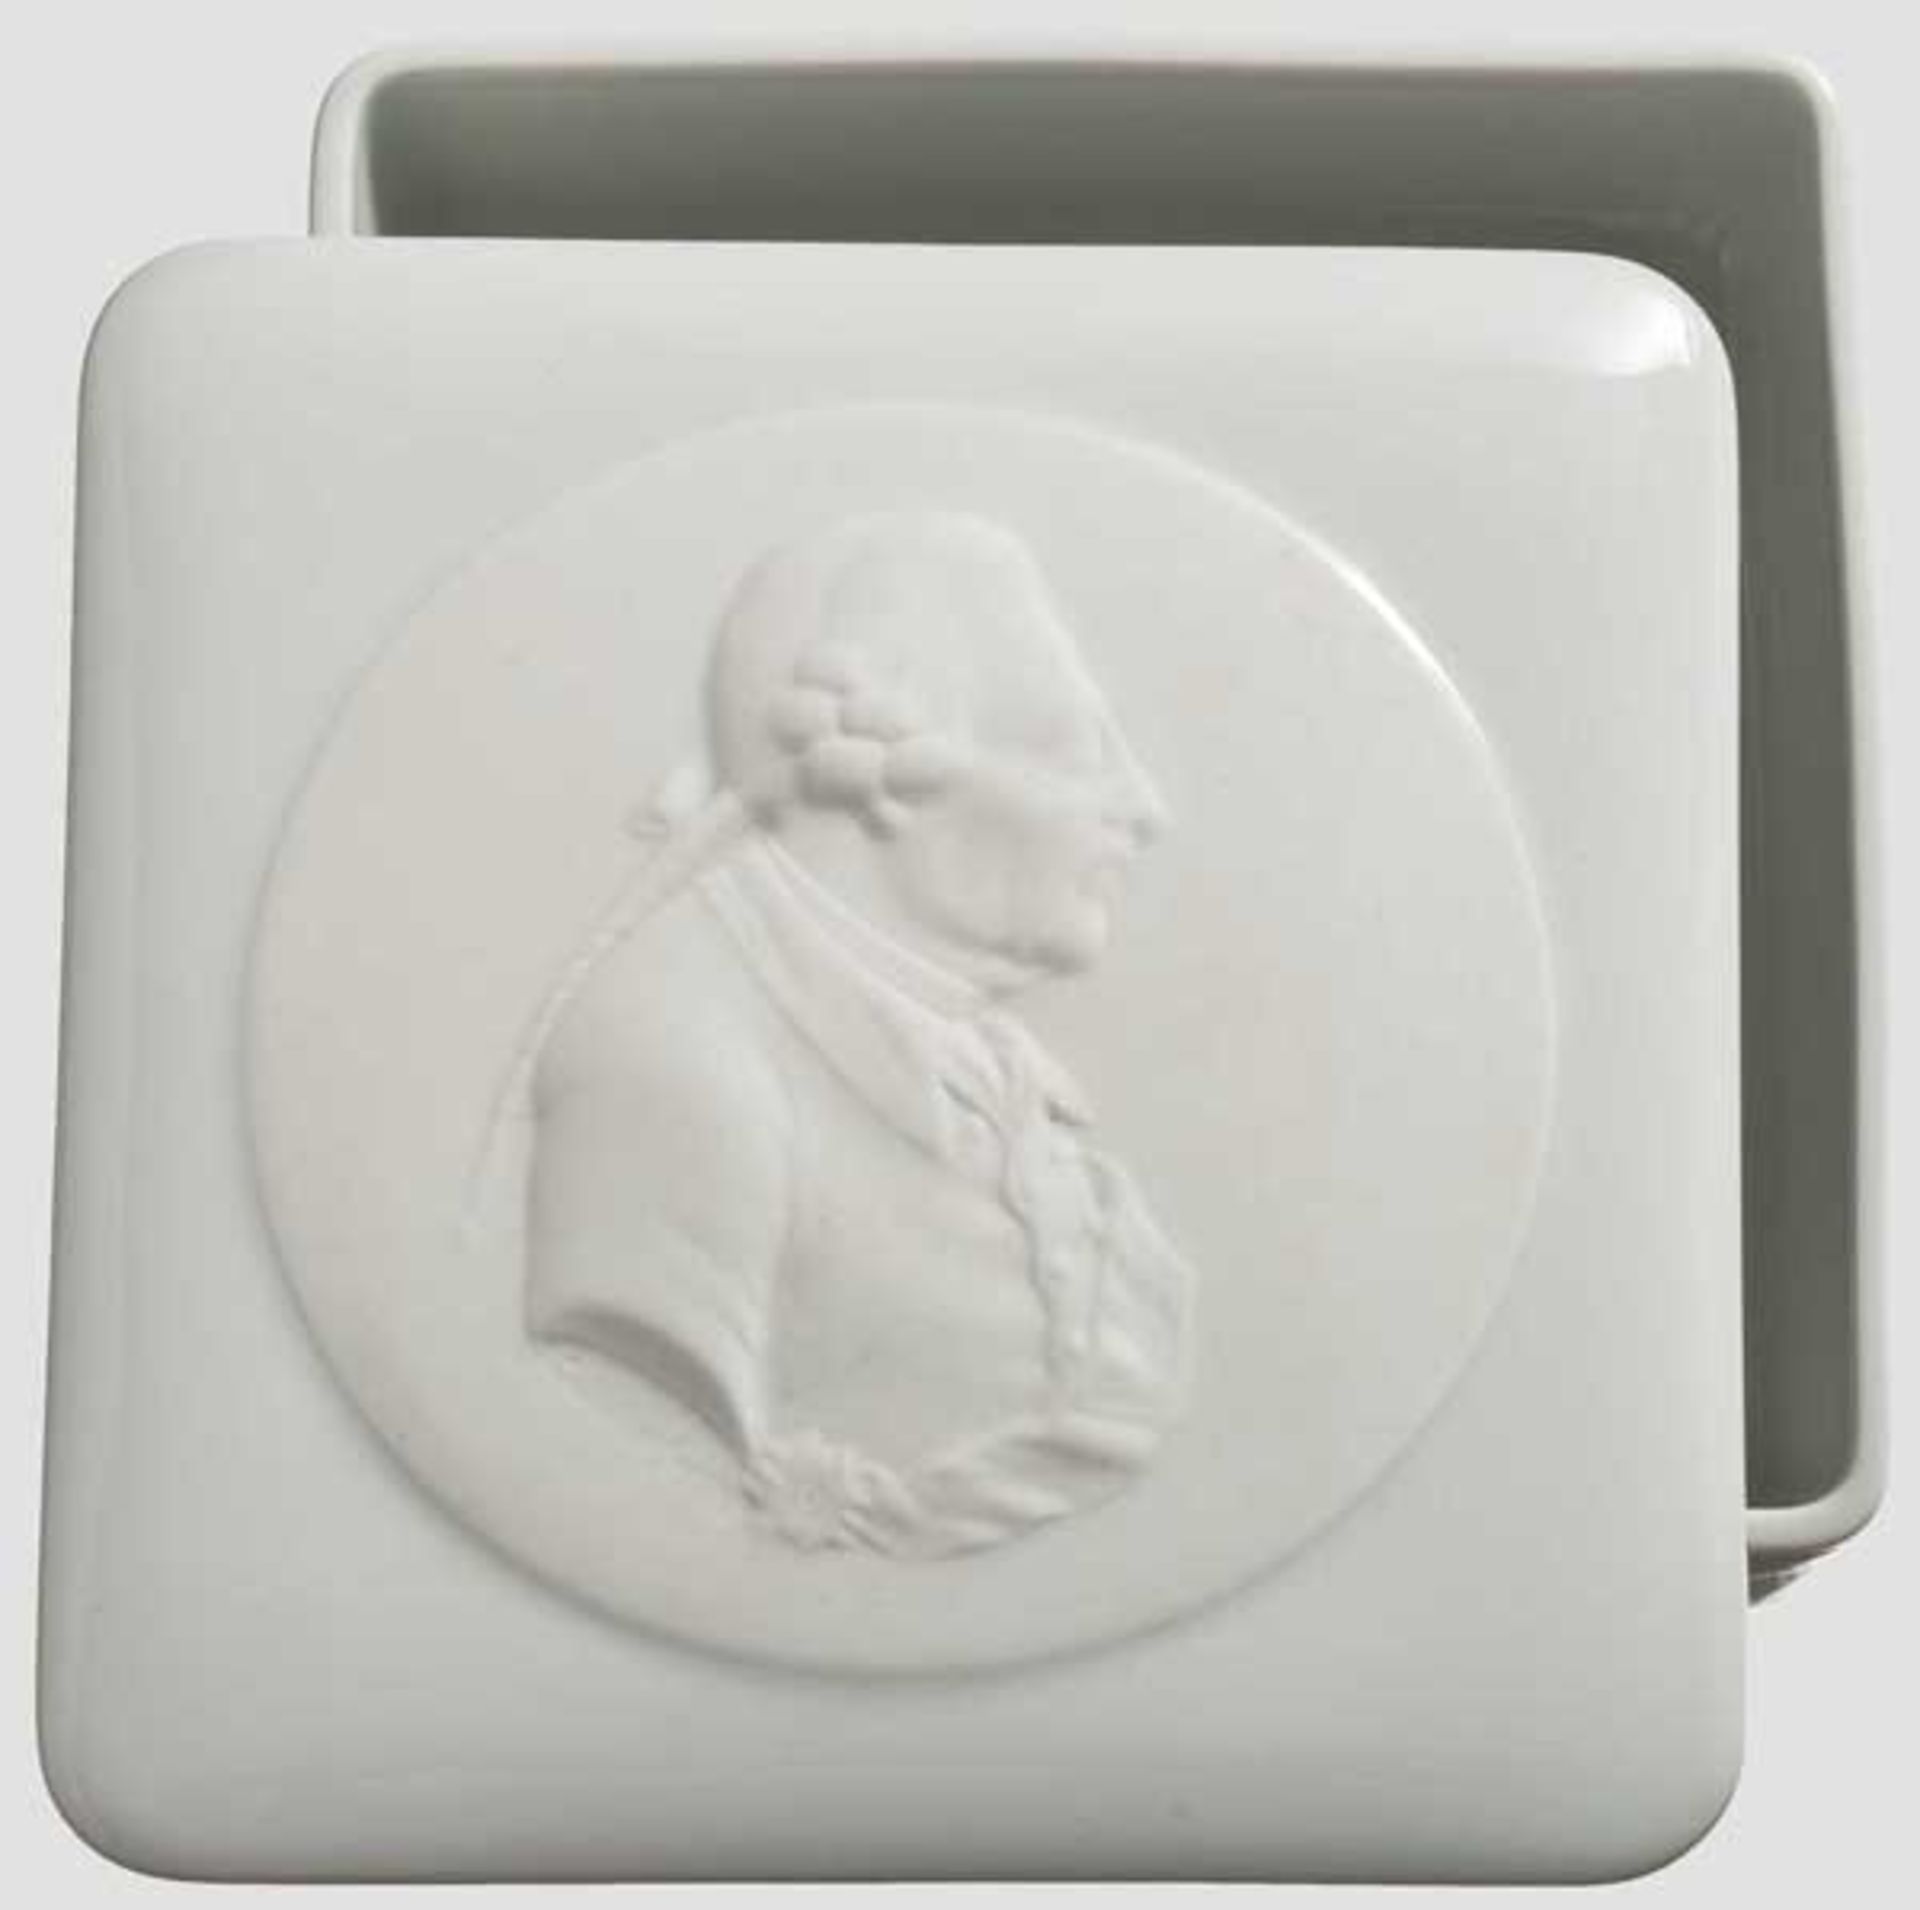 Friedrich der Große - KPM-Deckeldose mit Profilportrait des Königs Weißes, glasiertes Porzellan, auf